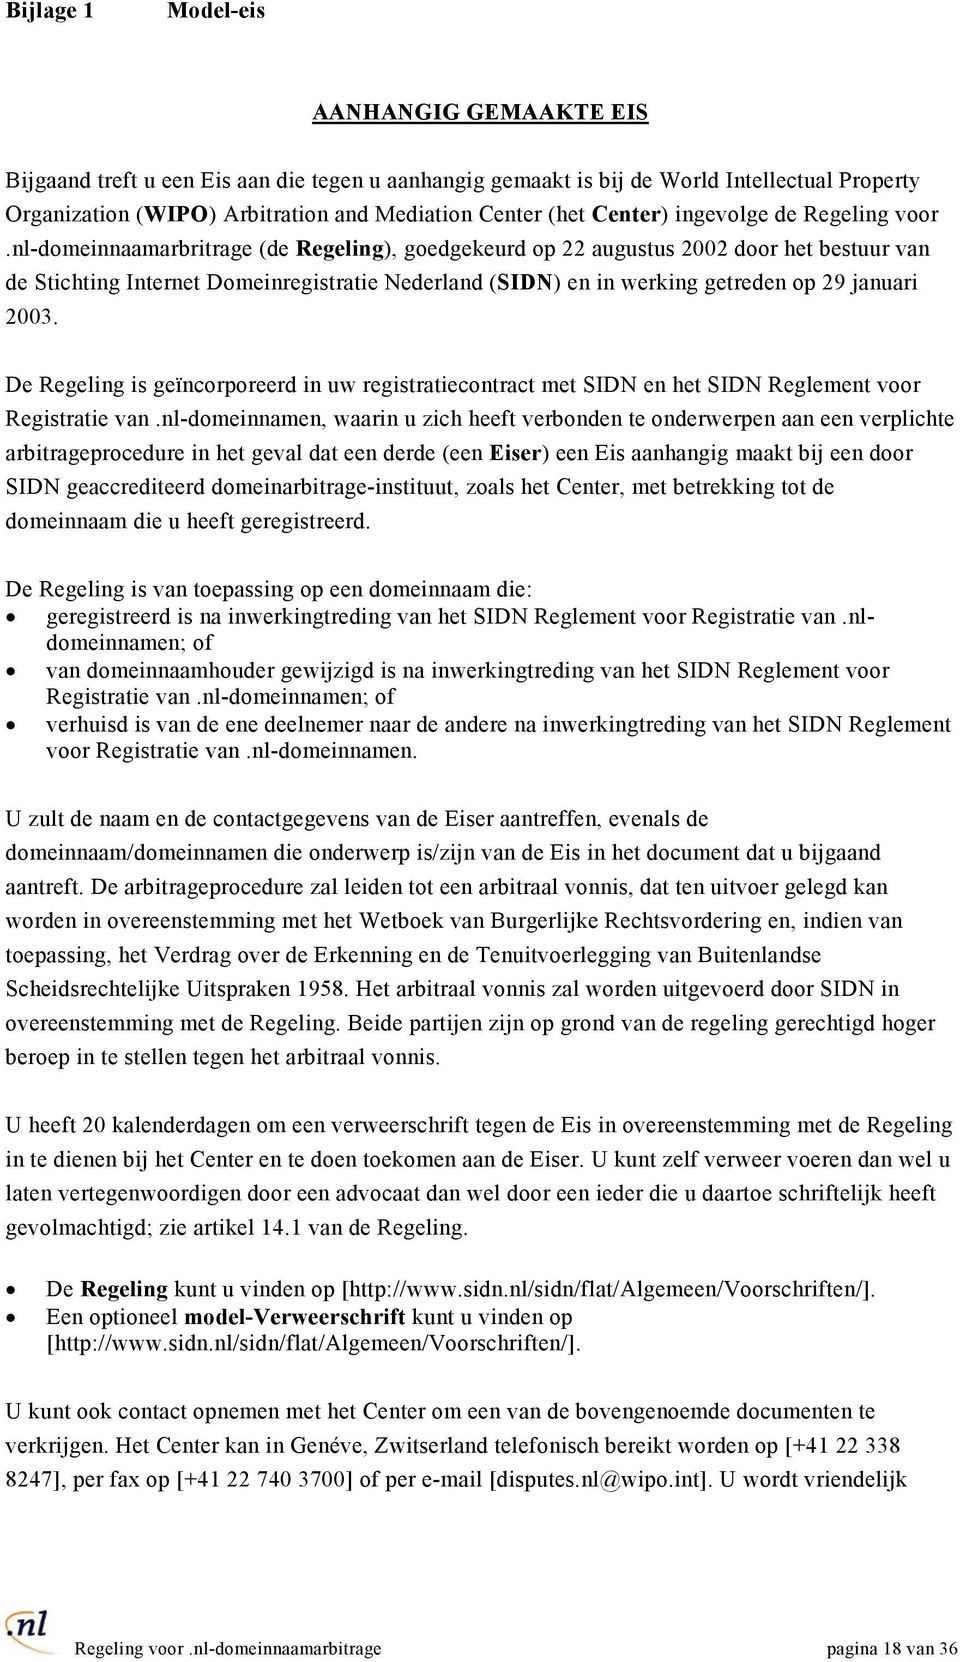 nl-domeinnaamarbritrage (de Regeling), goedgekeurd op 22 augustus 2002 door het bestuur van de Stichting Internet Domeinregistratie Nederland (SIDN) en in werking getreden op 29 januari 2003.